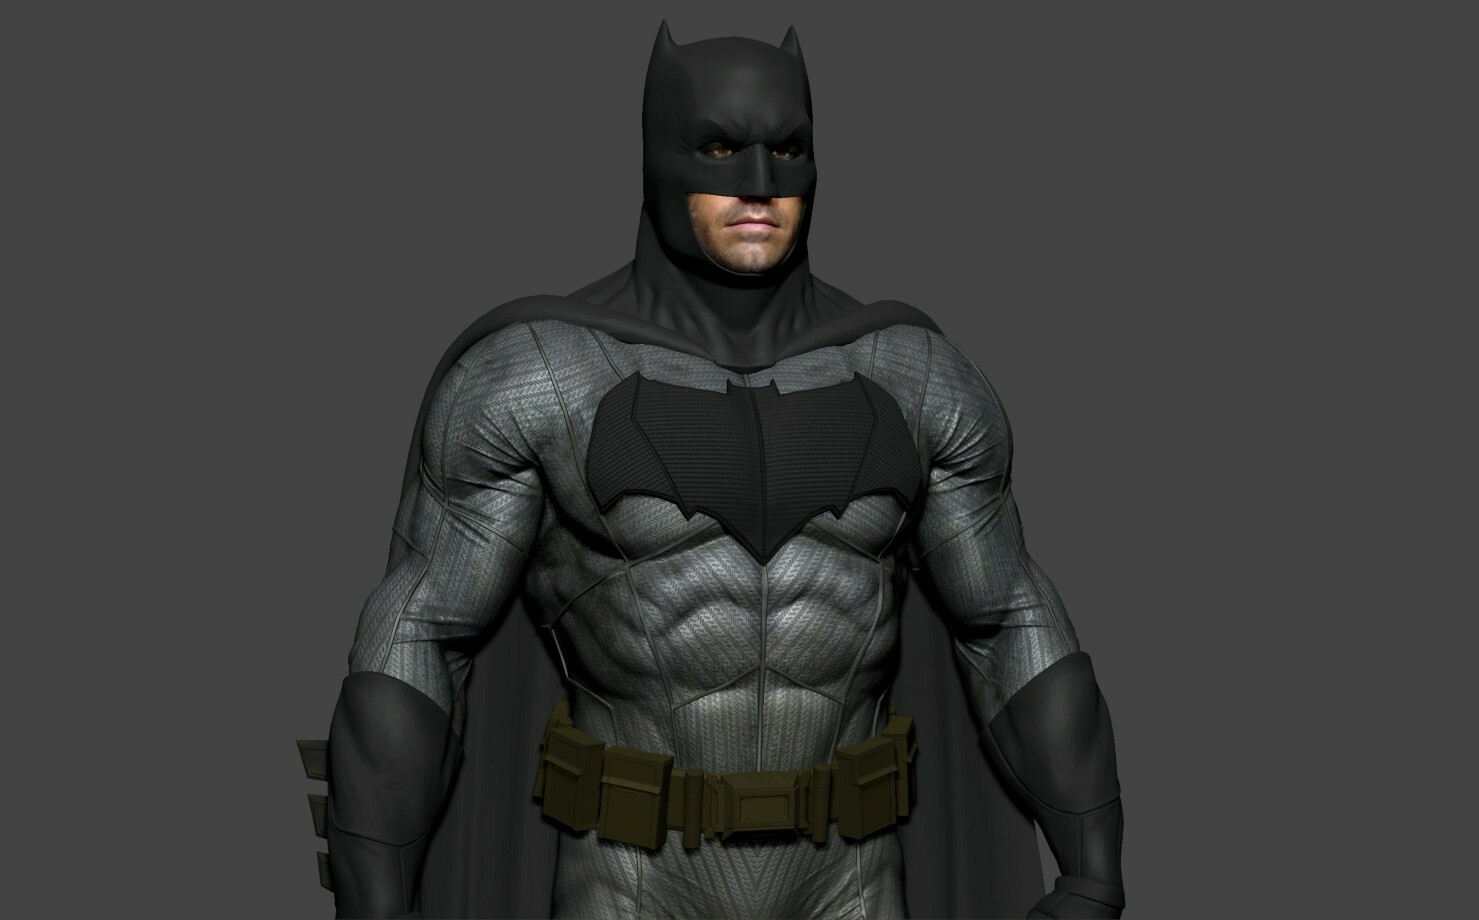 ArtStation - Batman BvS suit